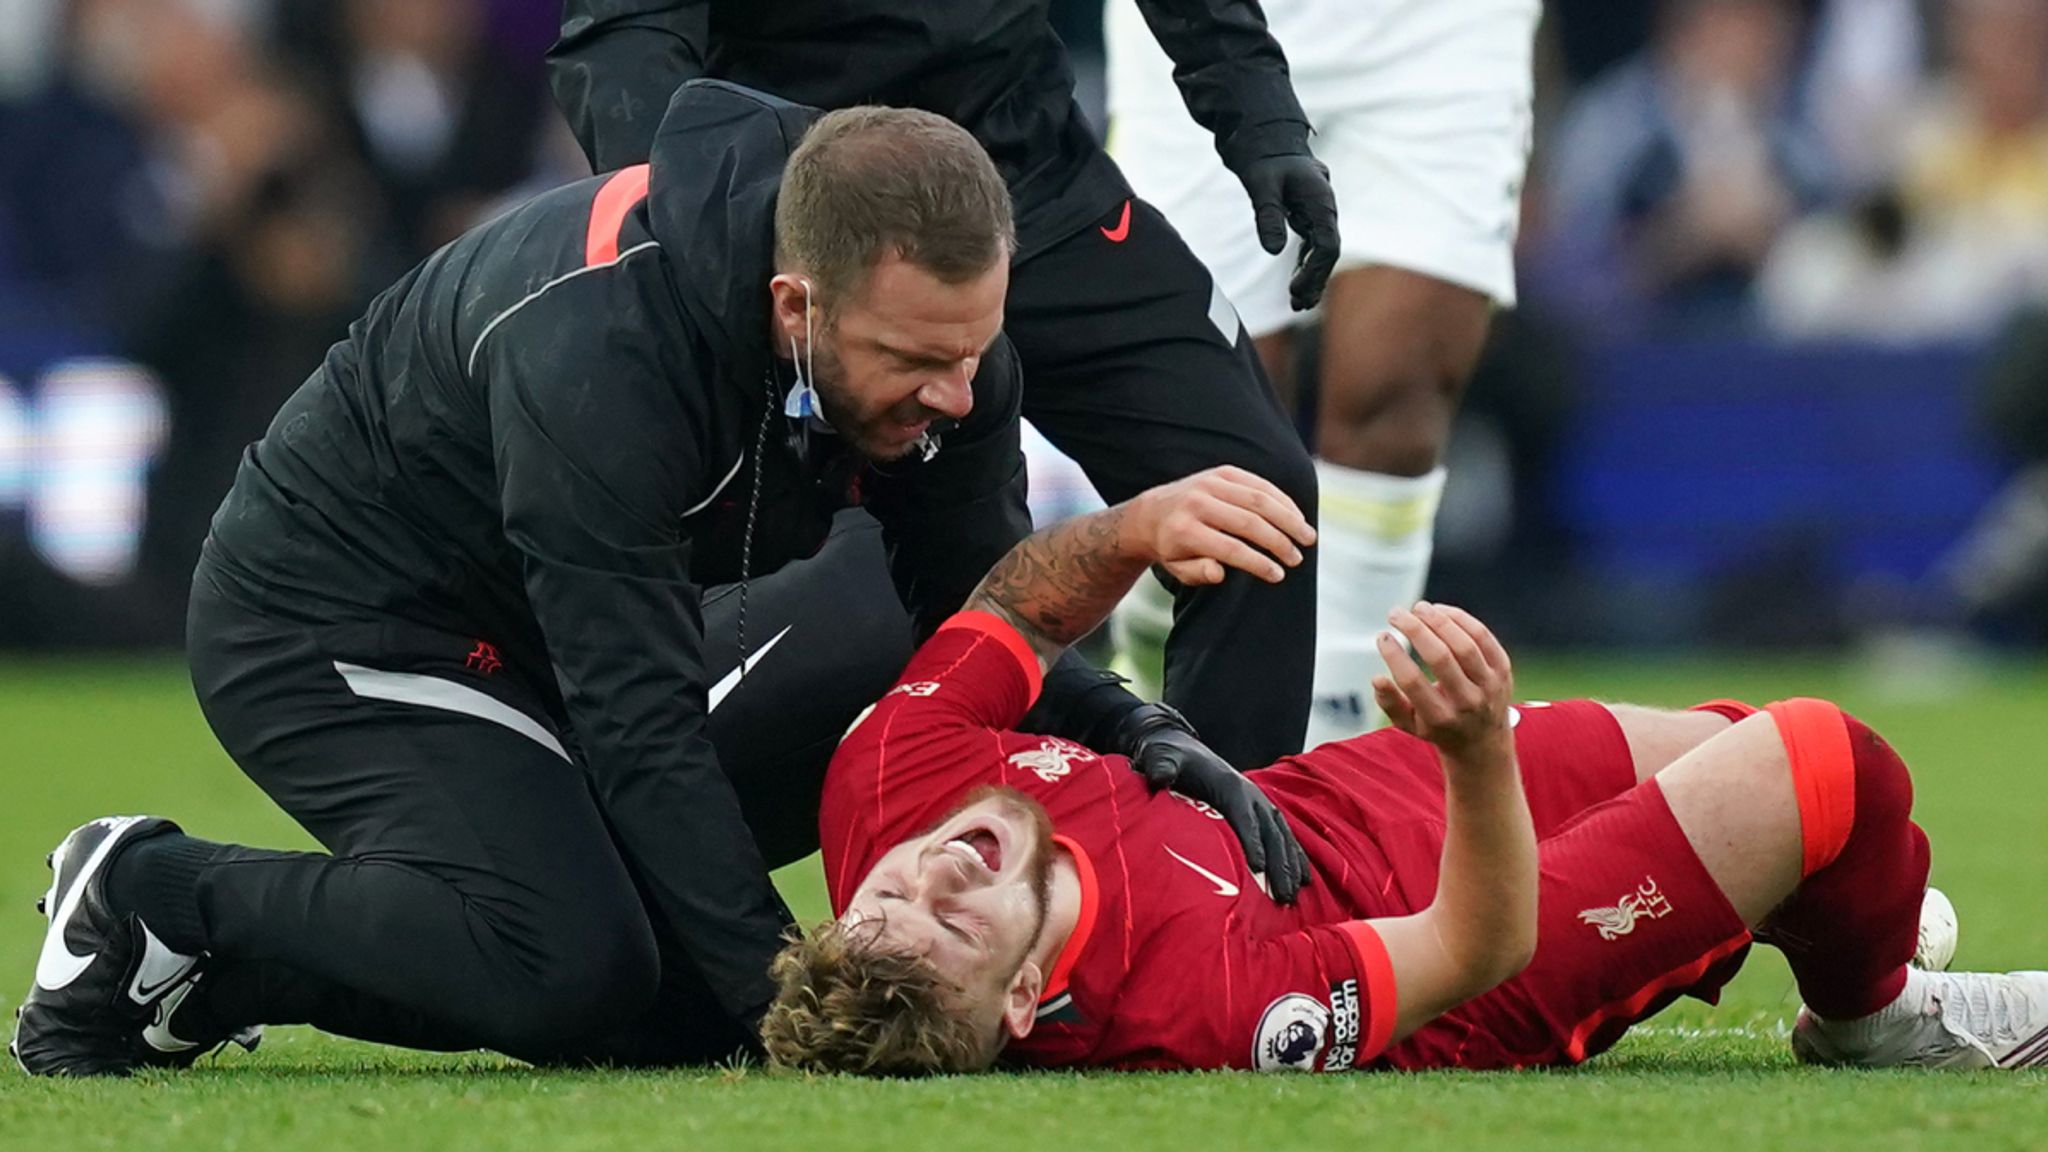 Chấn thương của Elliott đã khiến niềm vui chiến thắng của Liverpool không trọn vẹn